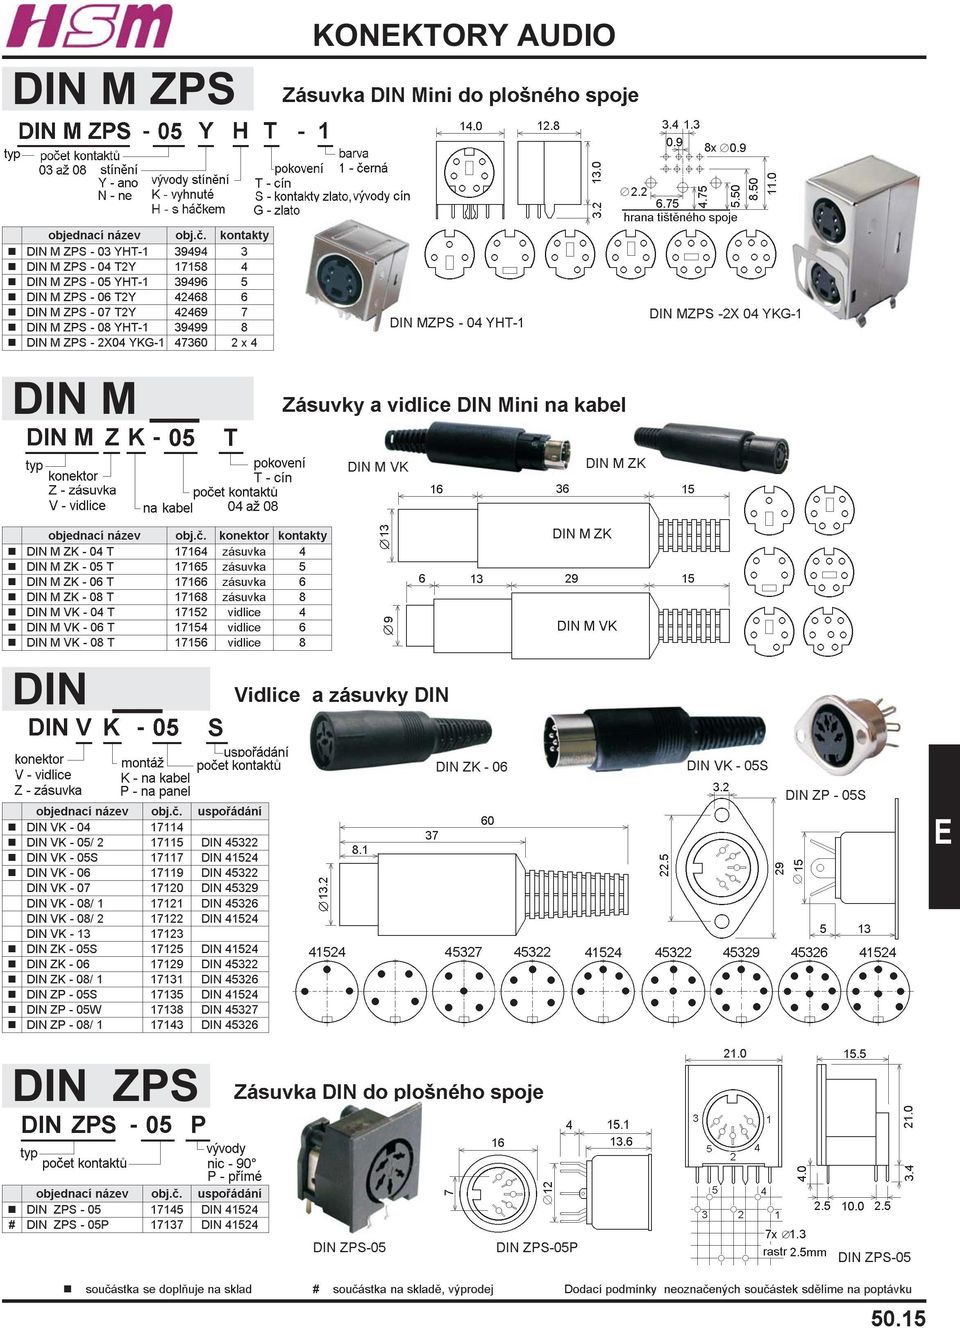 ZPS - 2X04 YKG-1 47360 2 x 4 DINM DIN MZPS - 04 YHT-1 Zásuvky a vidlice DIN Mini na kabel DIN MZPS -2X 04 YKG-1 DIN M VK DIN M ZK objednací název obj.è.